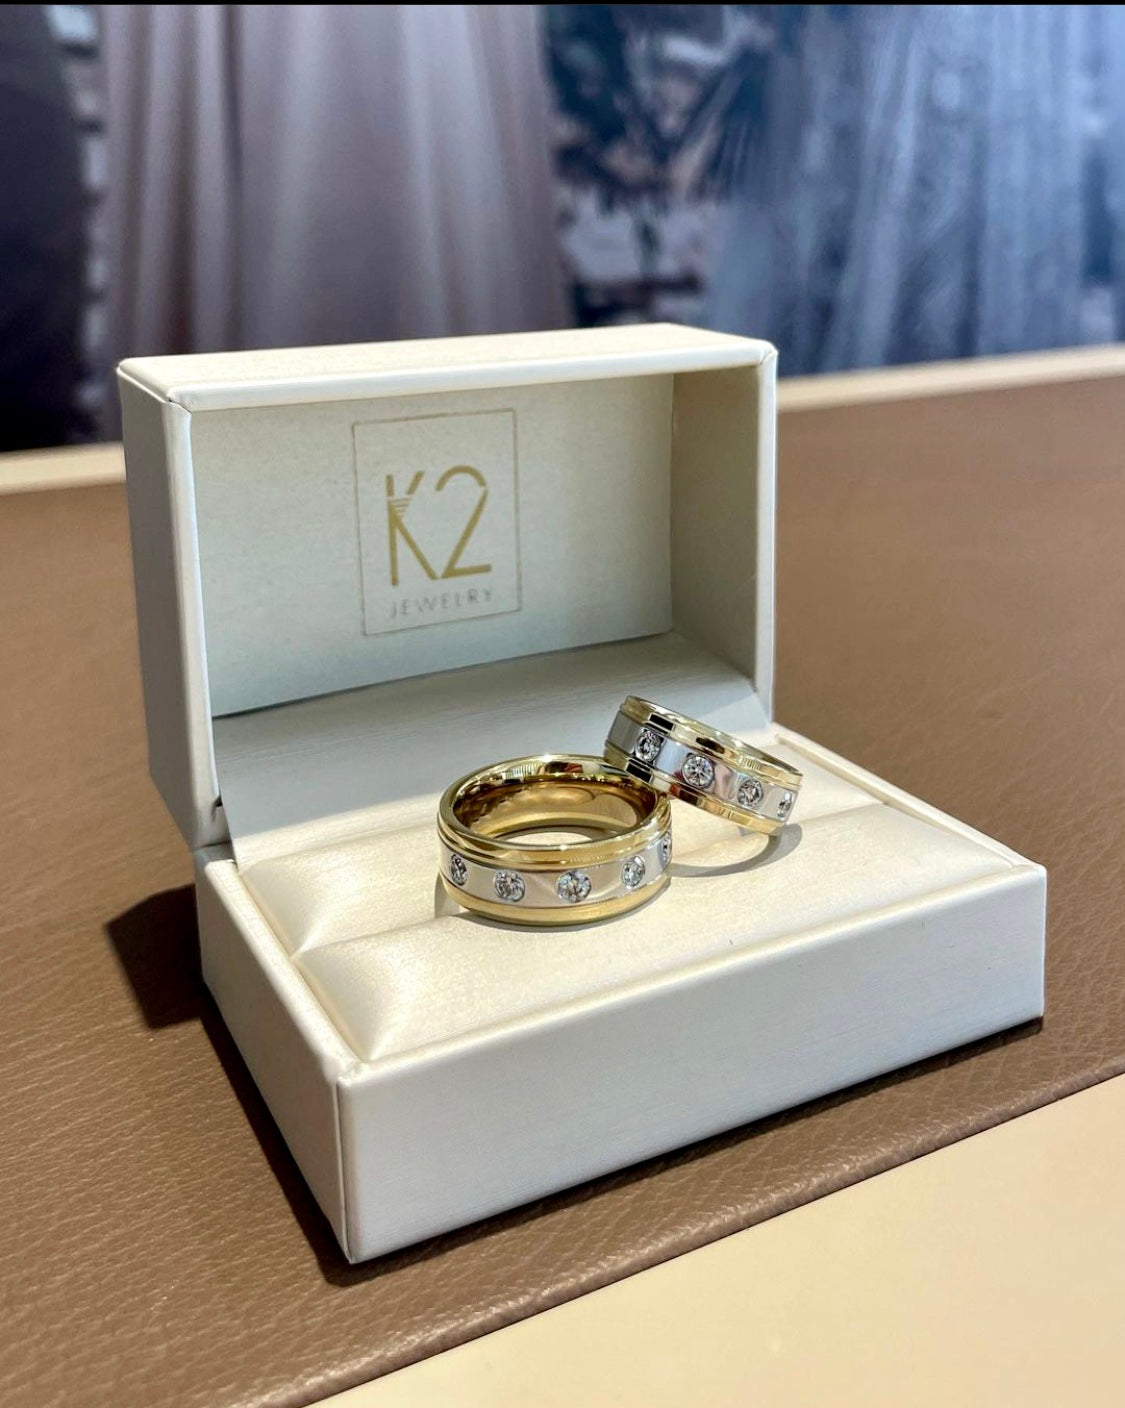 Bicolor Eheringe aus Gelbgold und Weißgold mit Diamanten in Bielefeld die in einer K2 Jewelry Schatulle liegen.